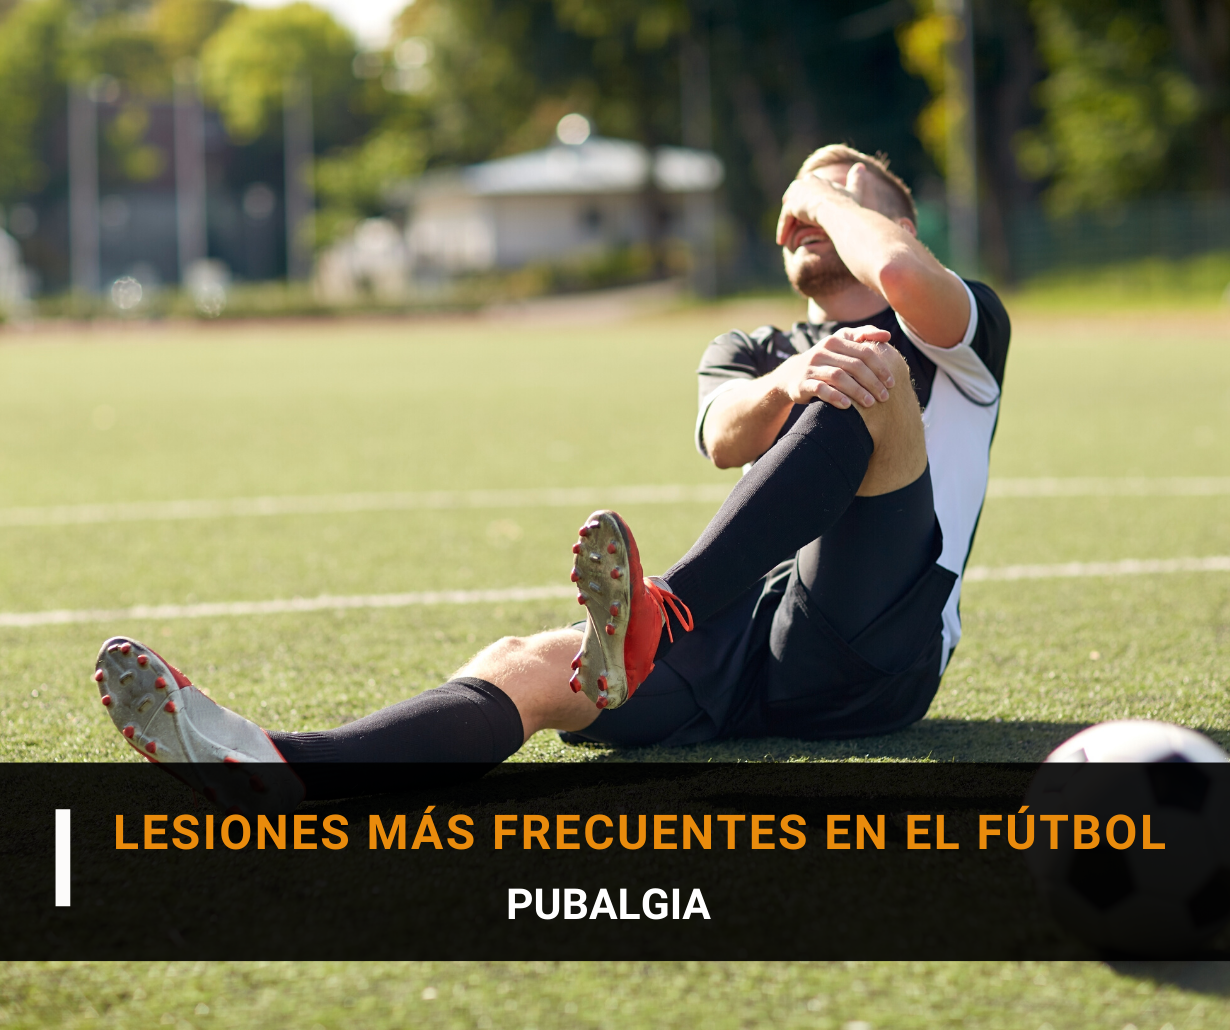 Lesiones más frecuentes en el fútbol (I): Pubalgia